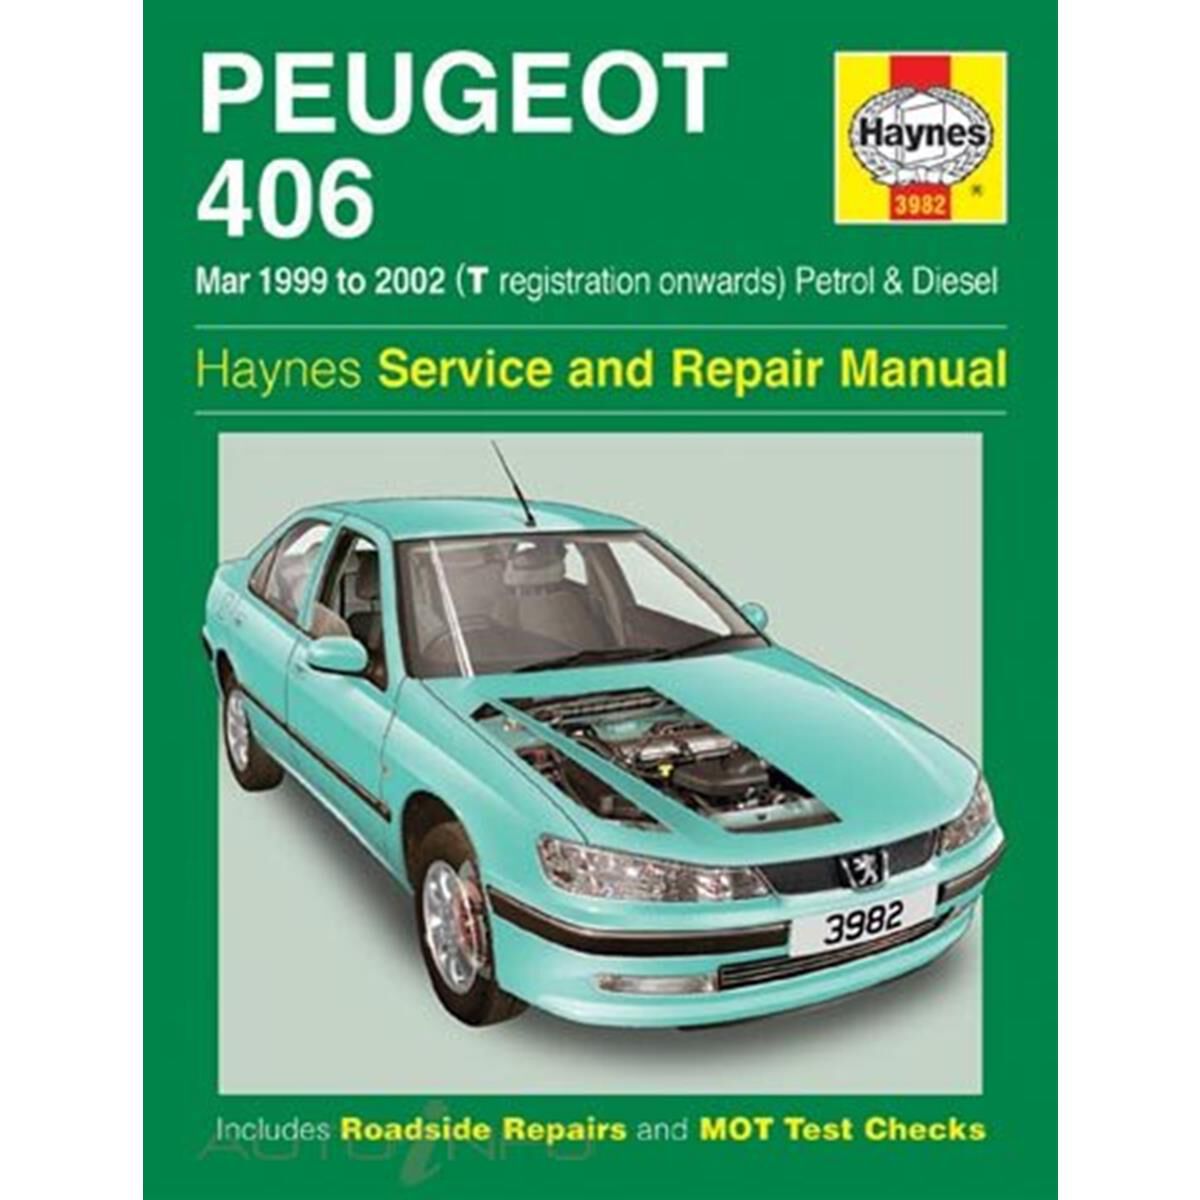 Haynes Workshop Manual Peugeot 406 Petrol Diesel 1999-2002 New Service Repair 